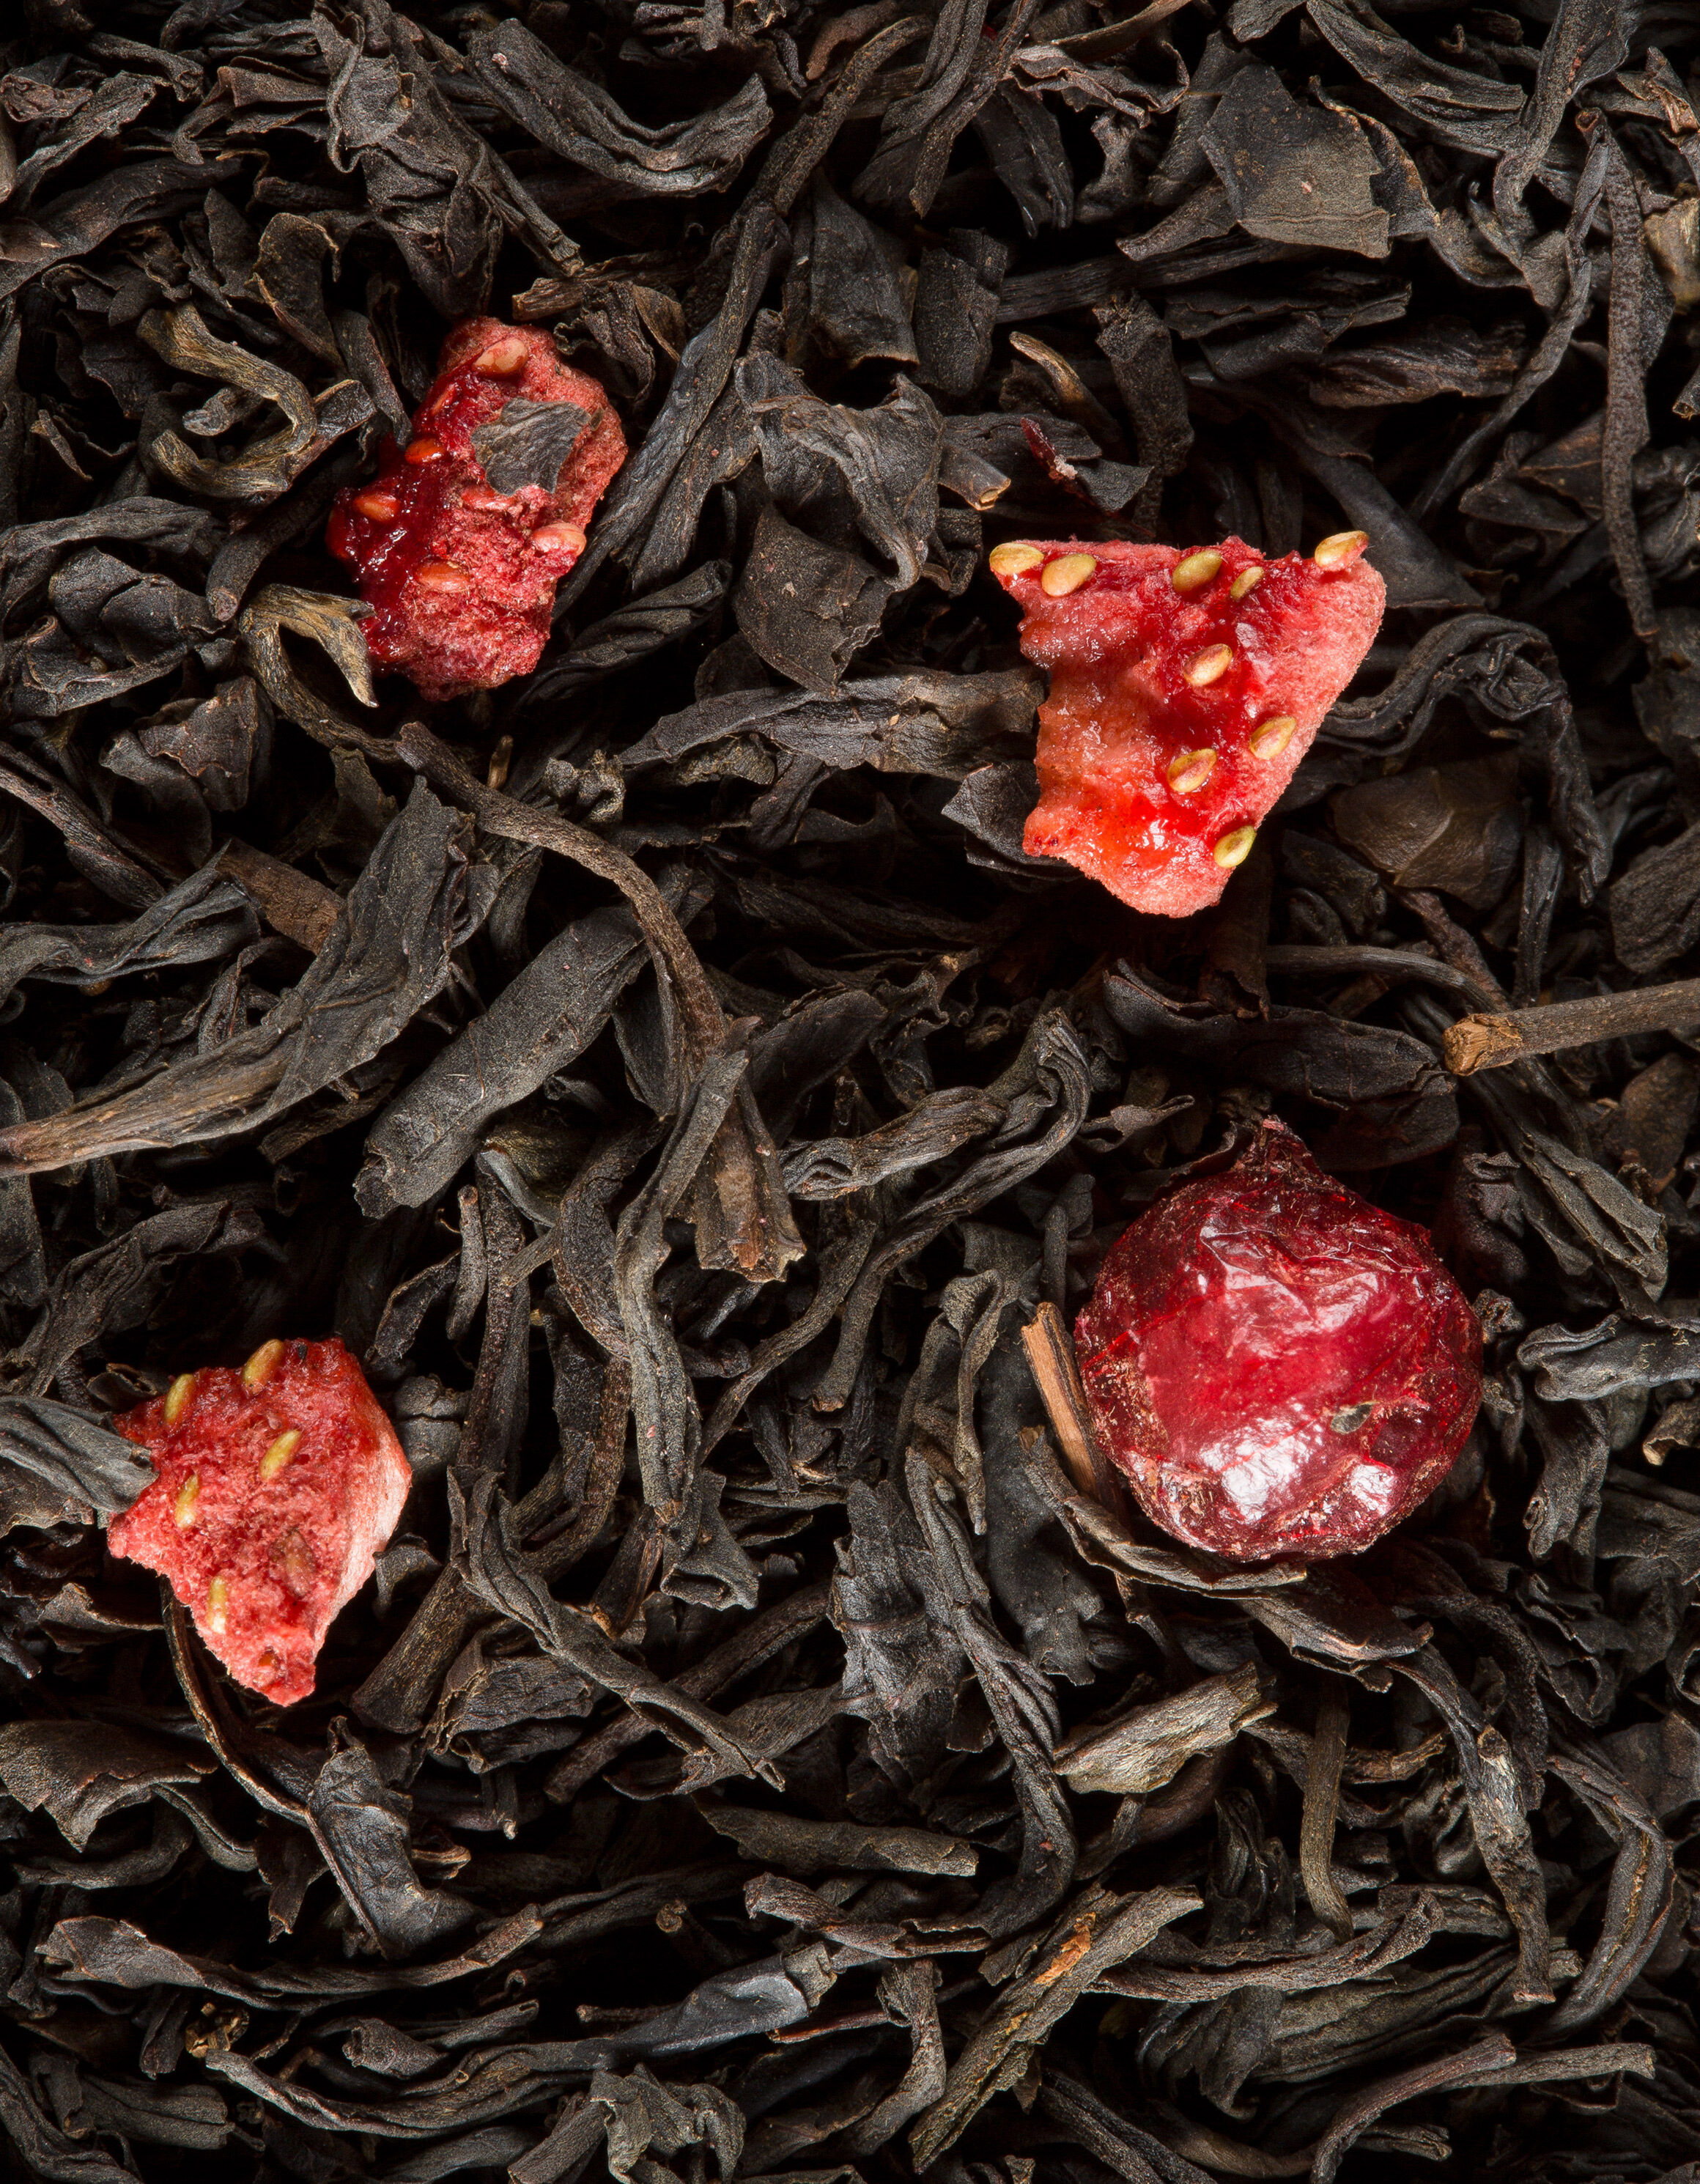 Quatre Fruits Rouges - Tea Bags or Tin - Dammann Frères